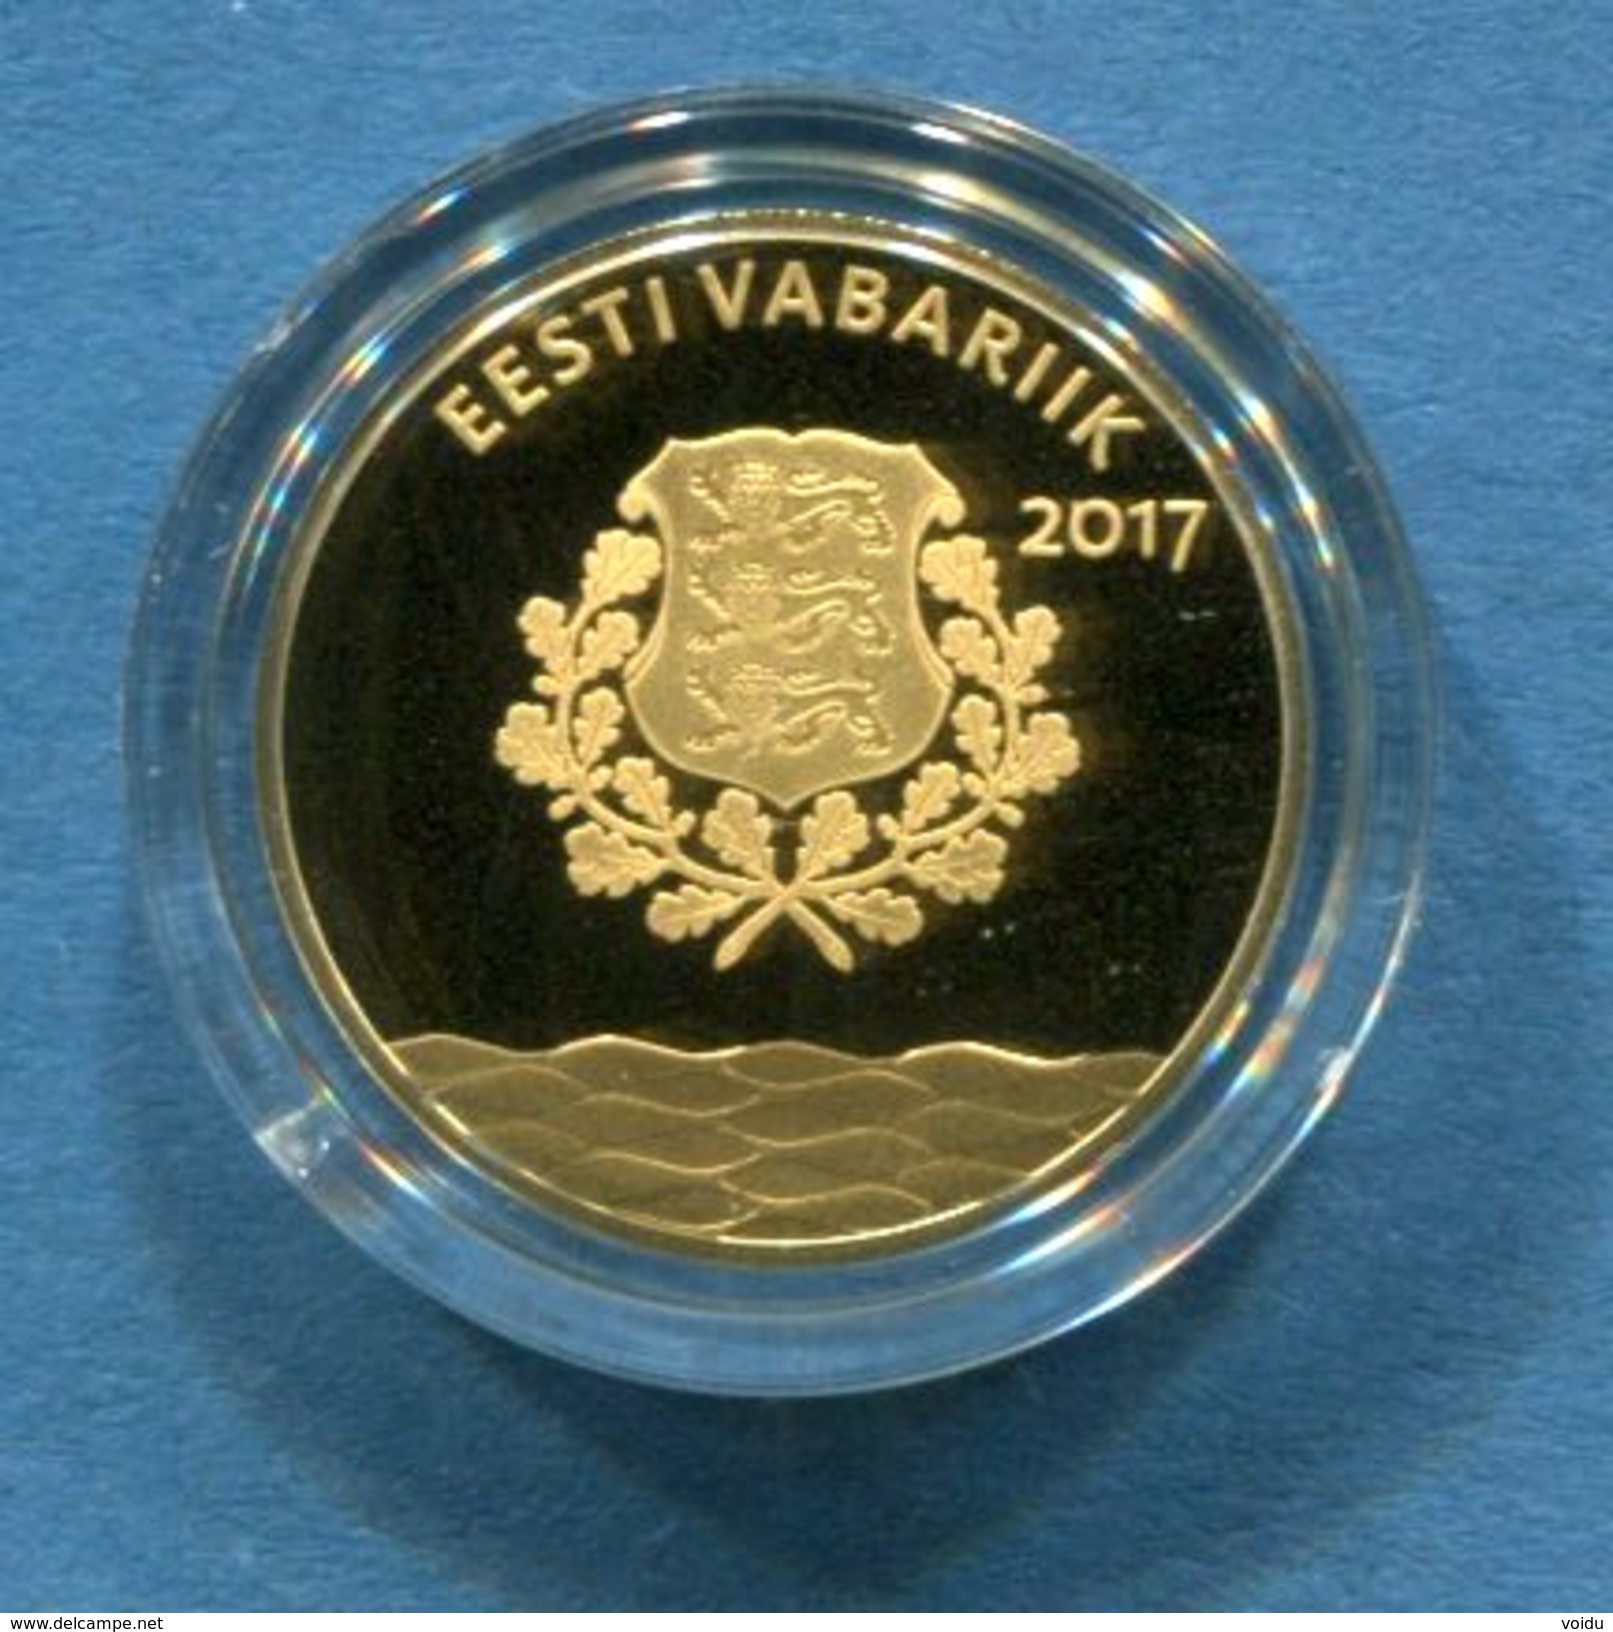 ESTONIA 25 &euro; Euro GOLD COLLECTOR COIN 2017 - Hanseatic Tallinn - Estonie